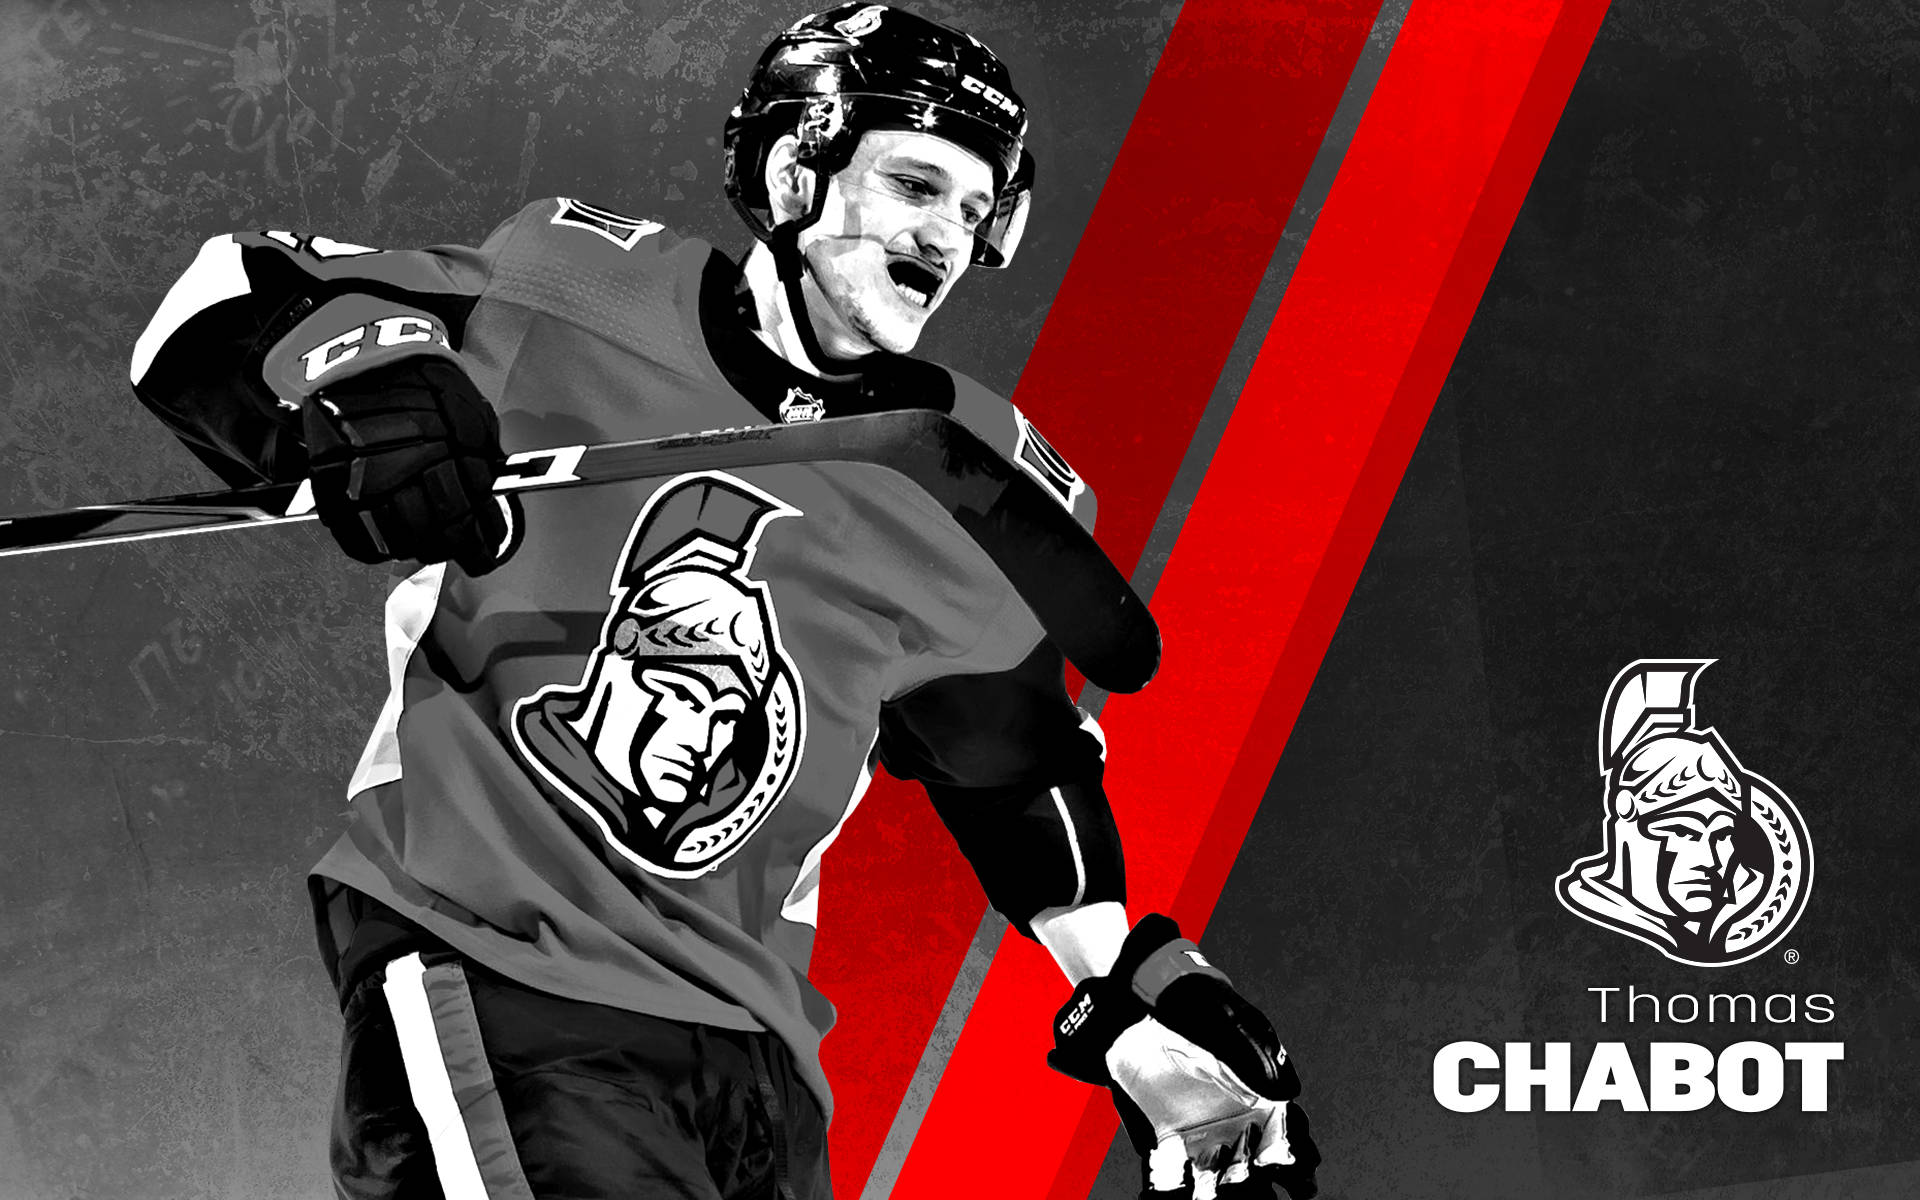 Download Ottawa Senators' Star Defenseman, Thomas Chabot, in